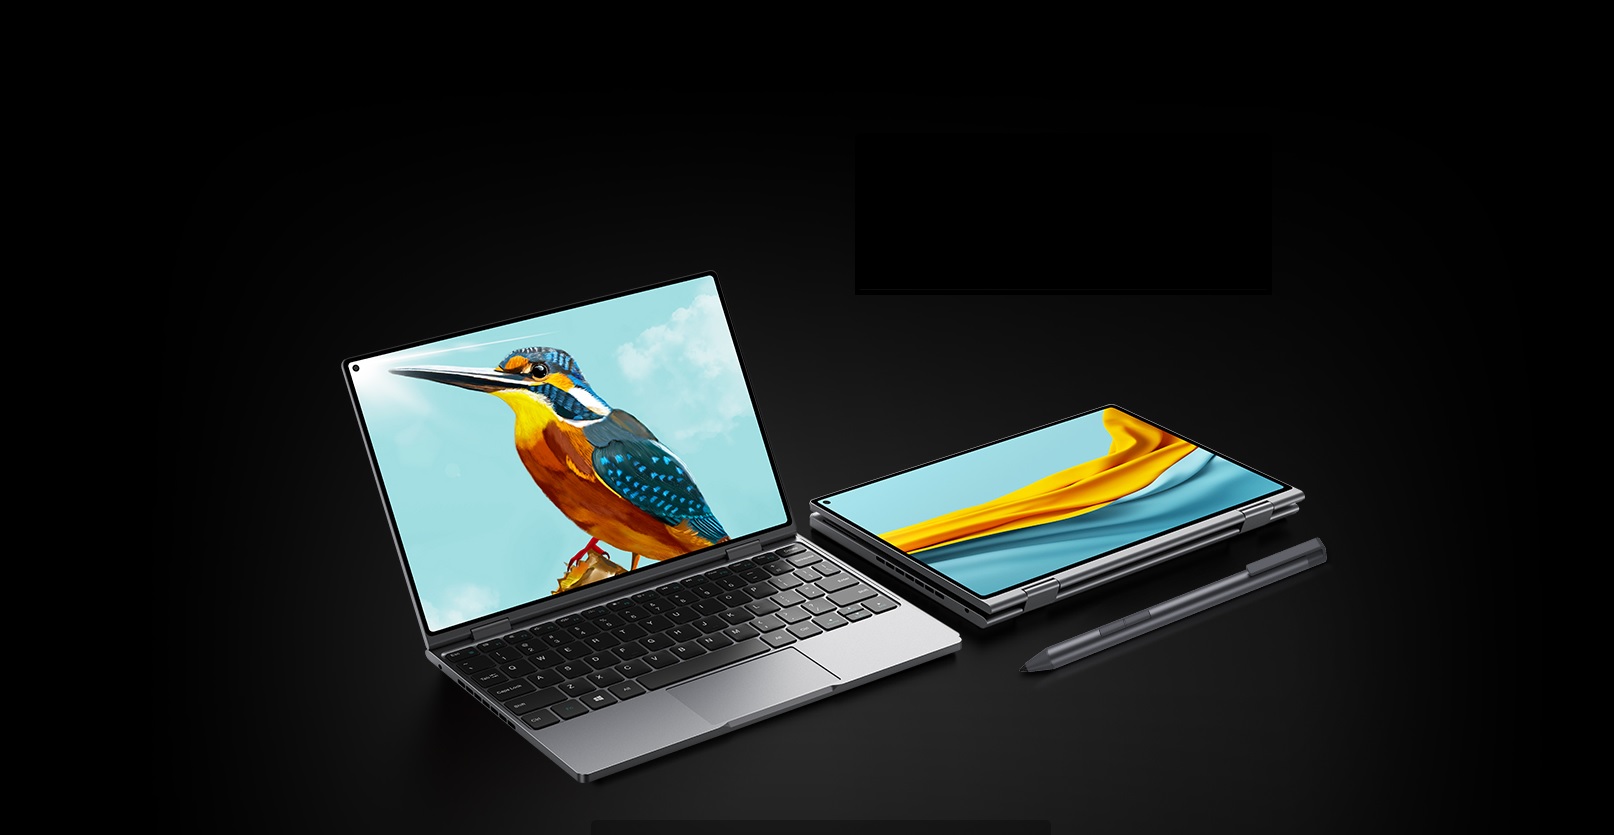 Nový kapesní notebook Chuwi MiniBook X s průstřelem v displeji a režimem Yoga [sponzorovaný článek]